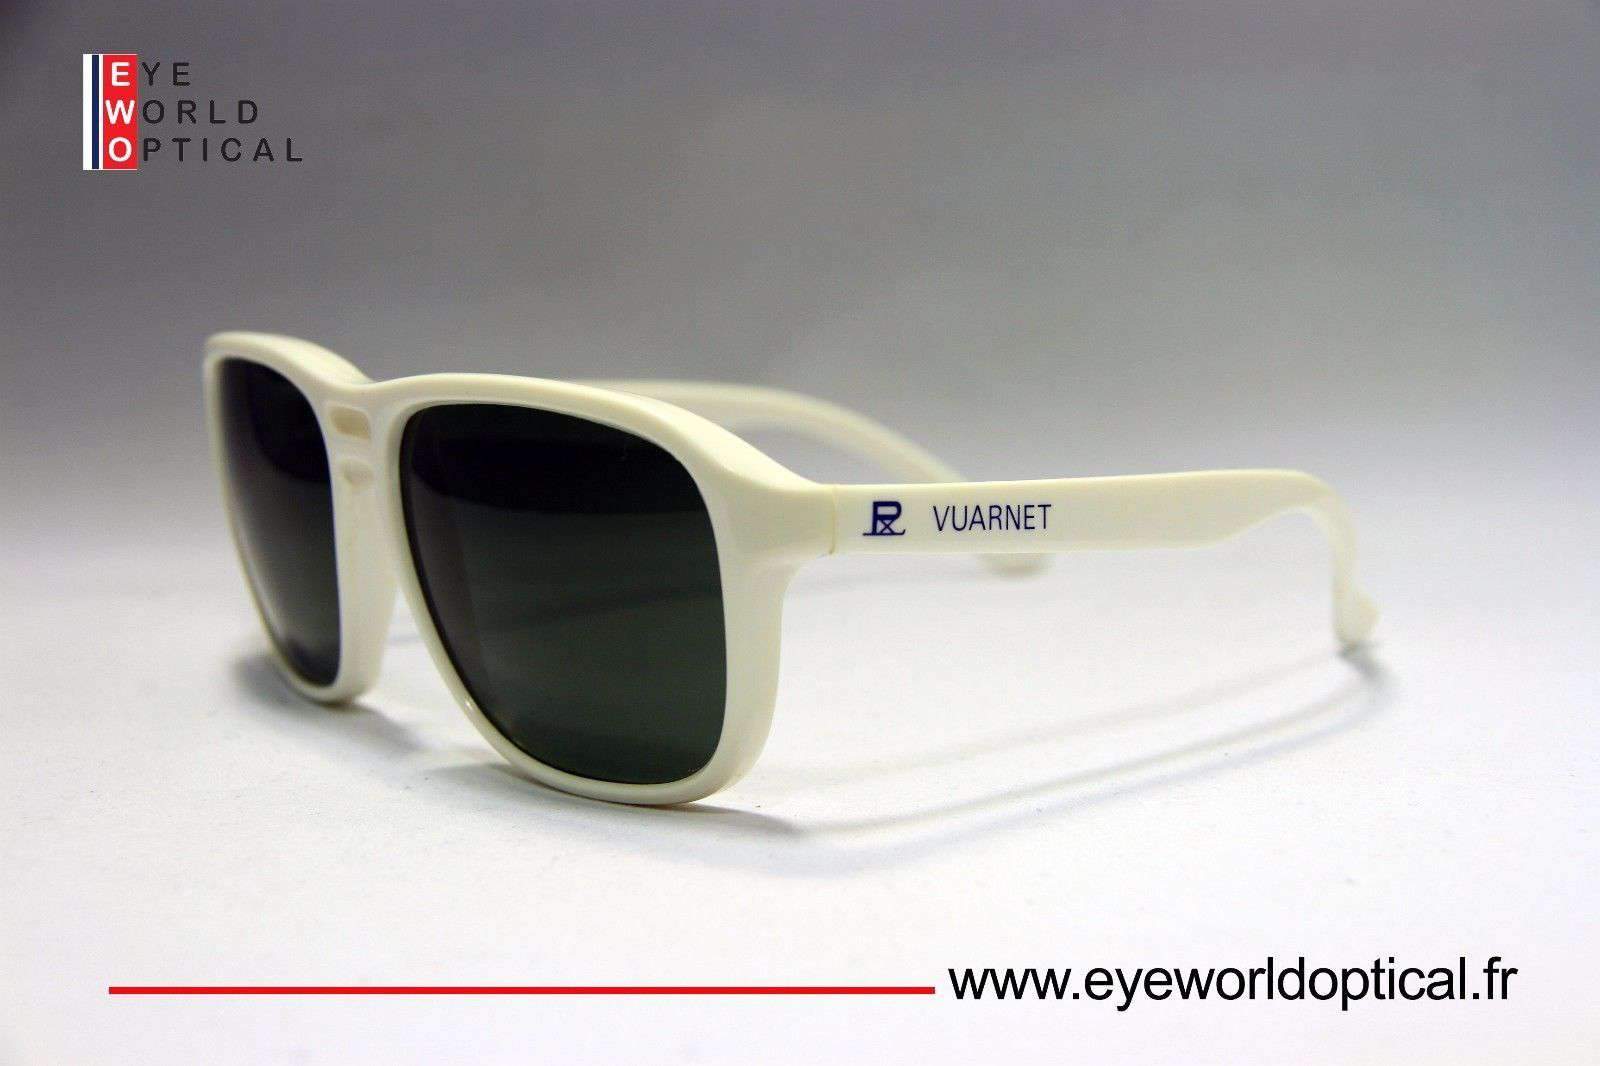 VUARNET 083 White Sunglasses PX3000 Gray lens Mineral Lens | Eyeworld ...